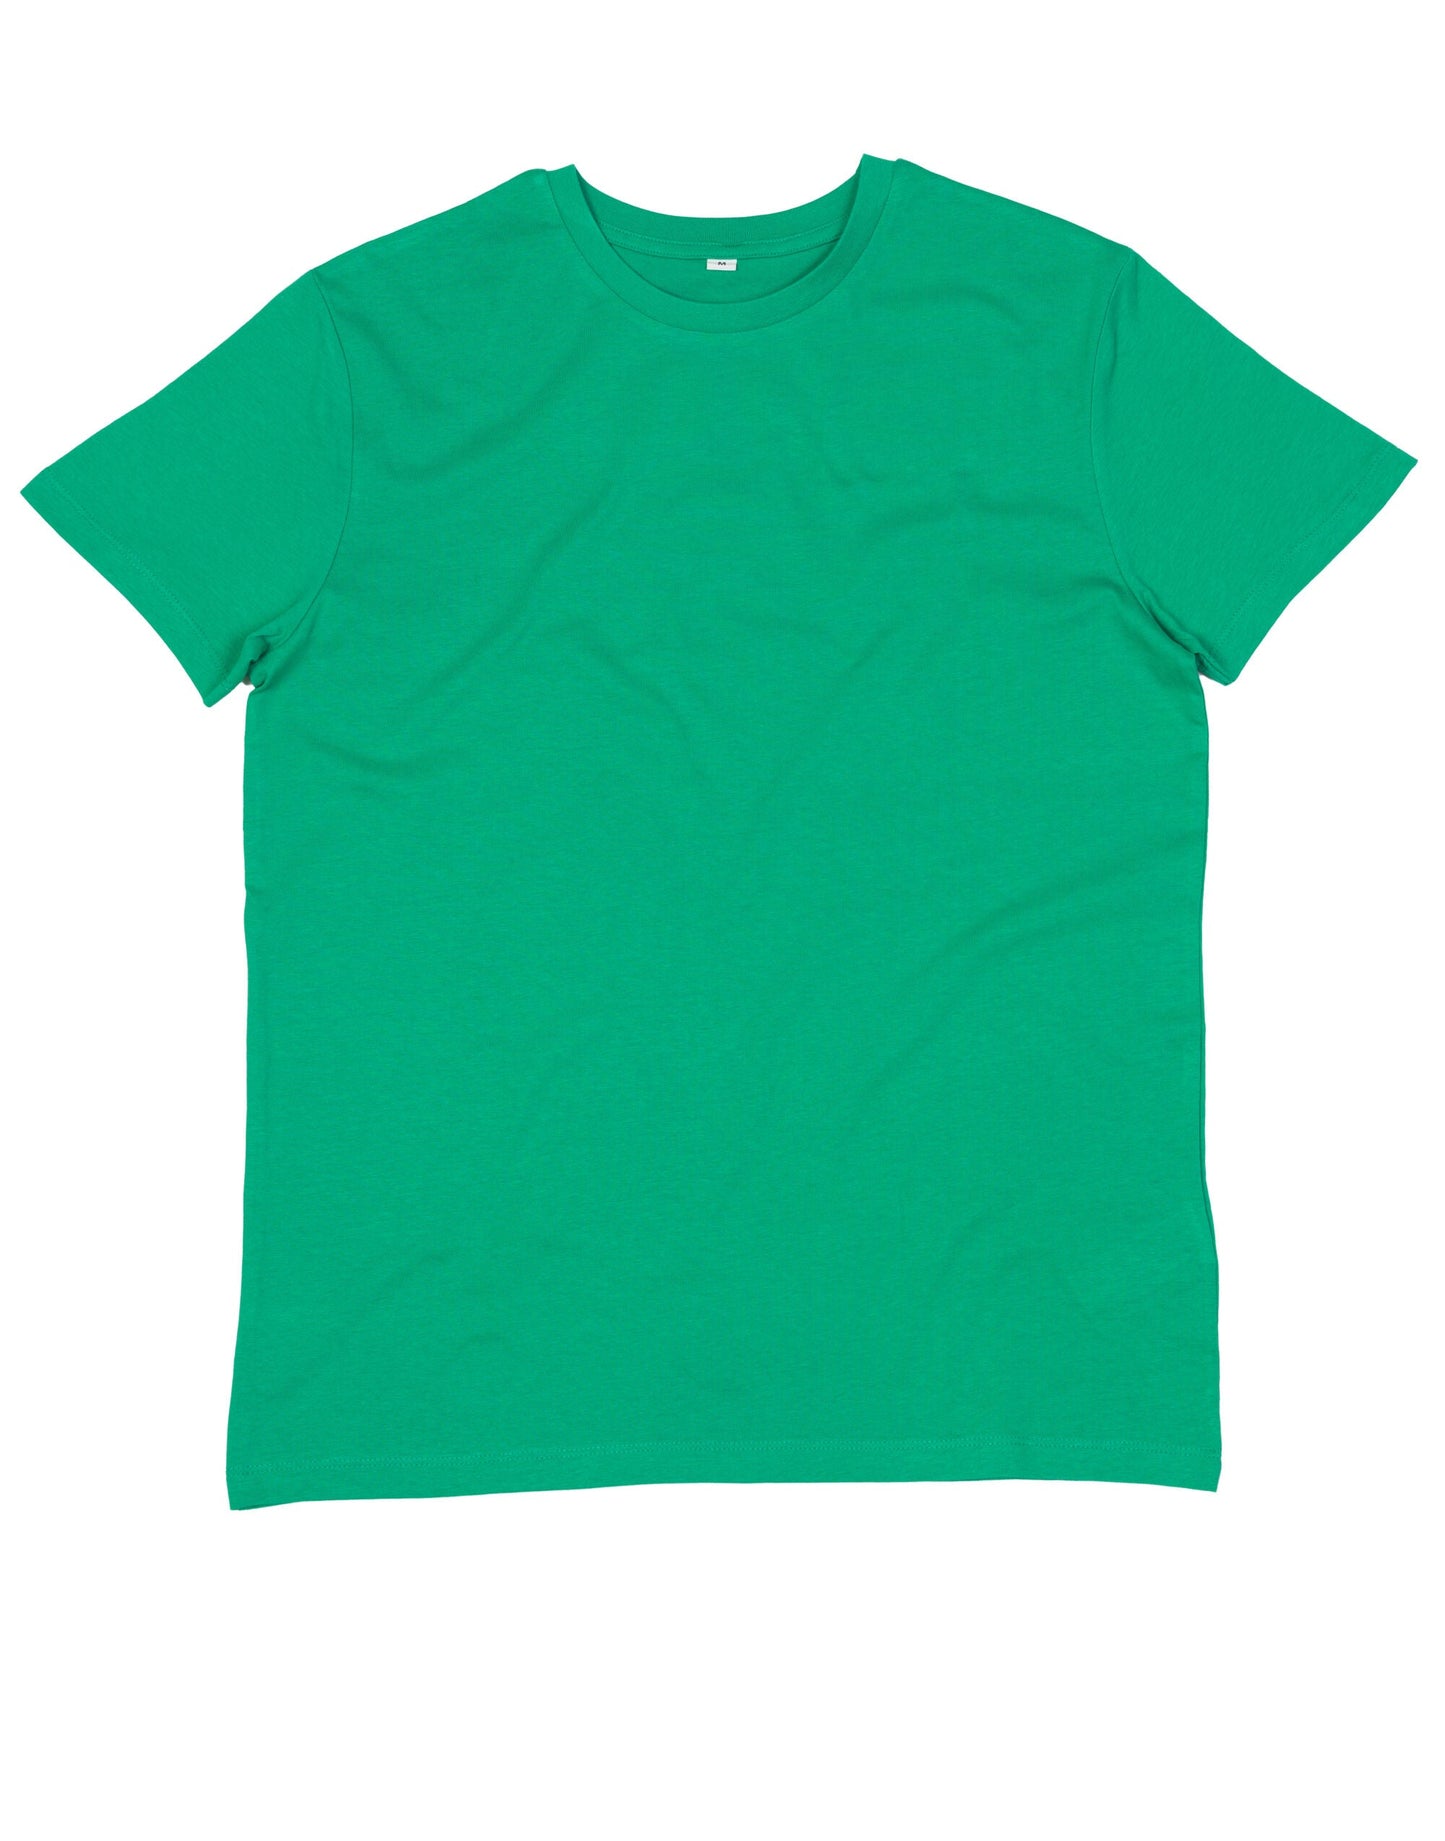 Mantis Men's Essential T-Shirt Main color M01 - COOZO